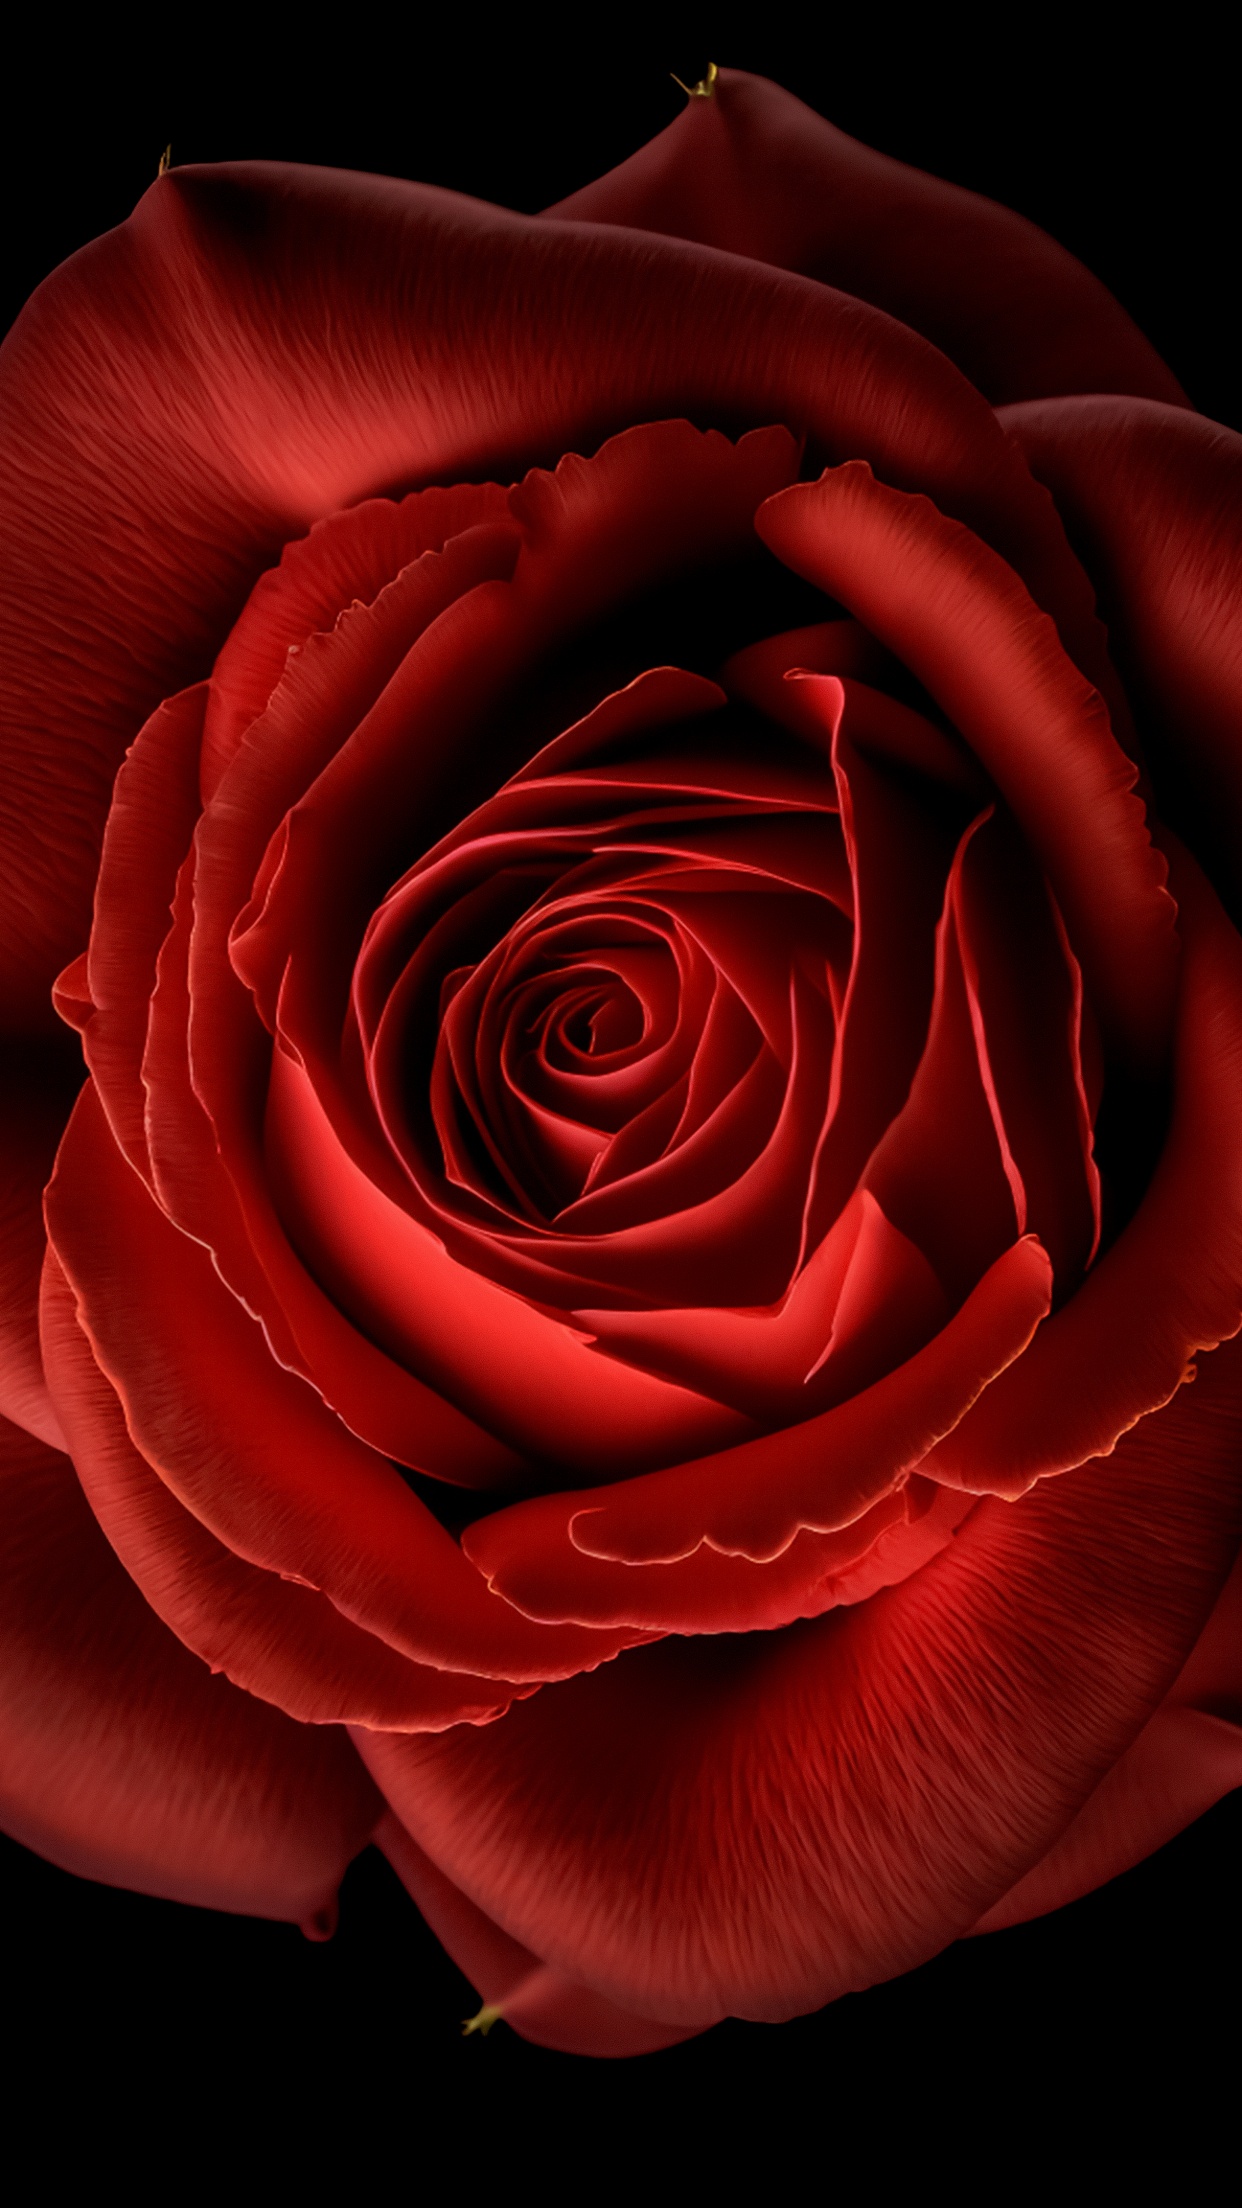 Rose Flower Dew  Free stock photo on Pixabay  Pixabay